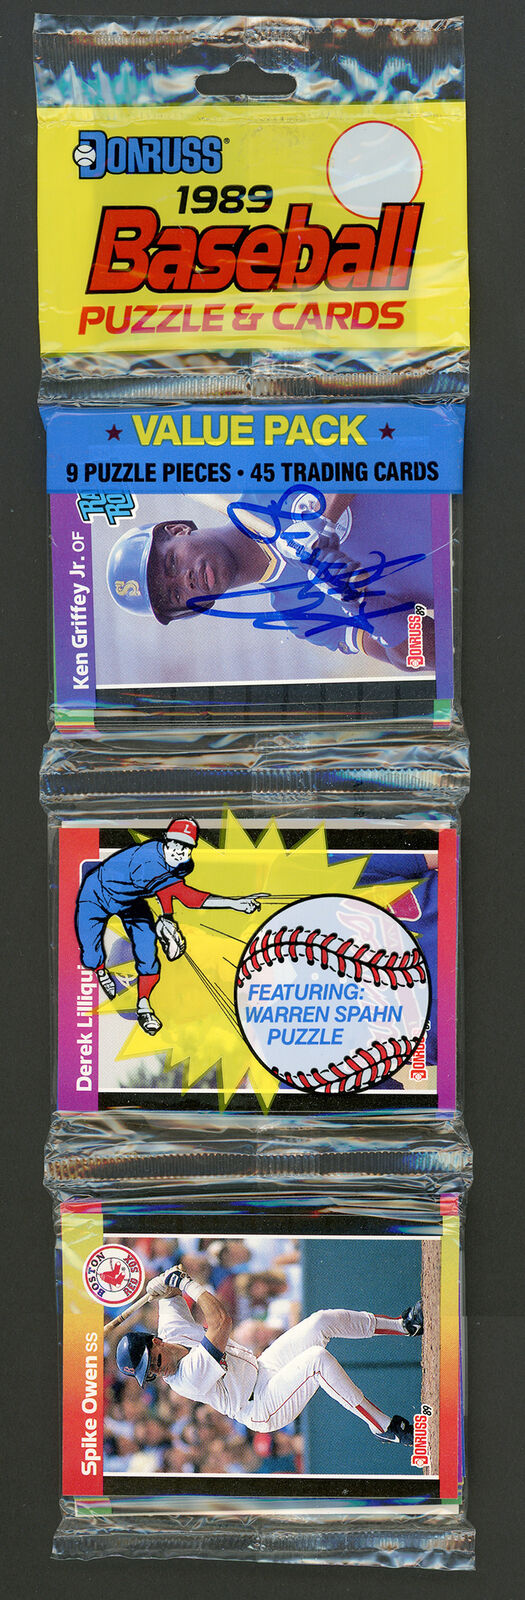 Ken Griffey Jr. Autographed 1989 Donruss Baseball Rack Pack RC Beckett AA00382 Image 1